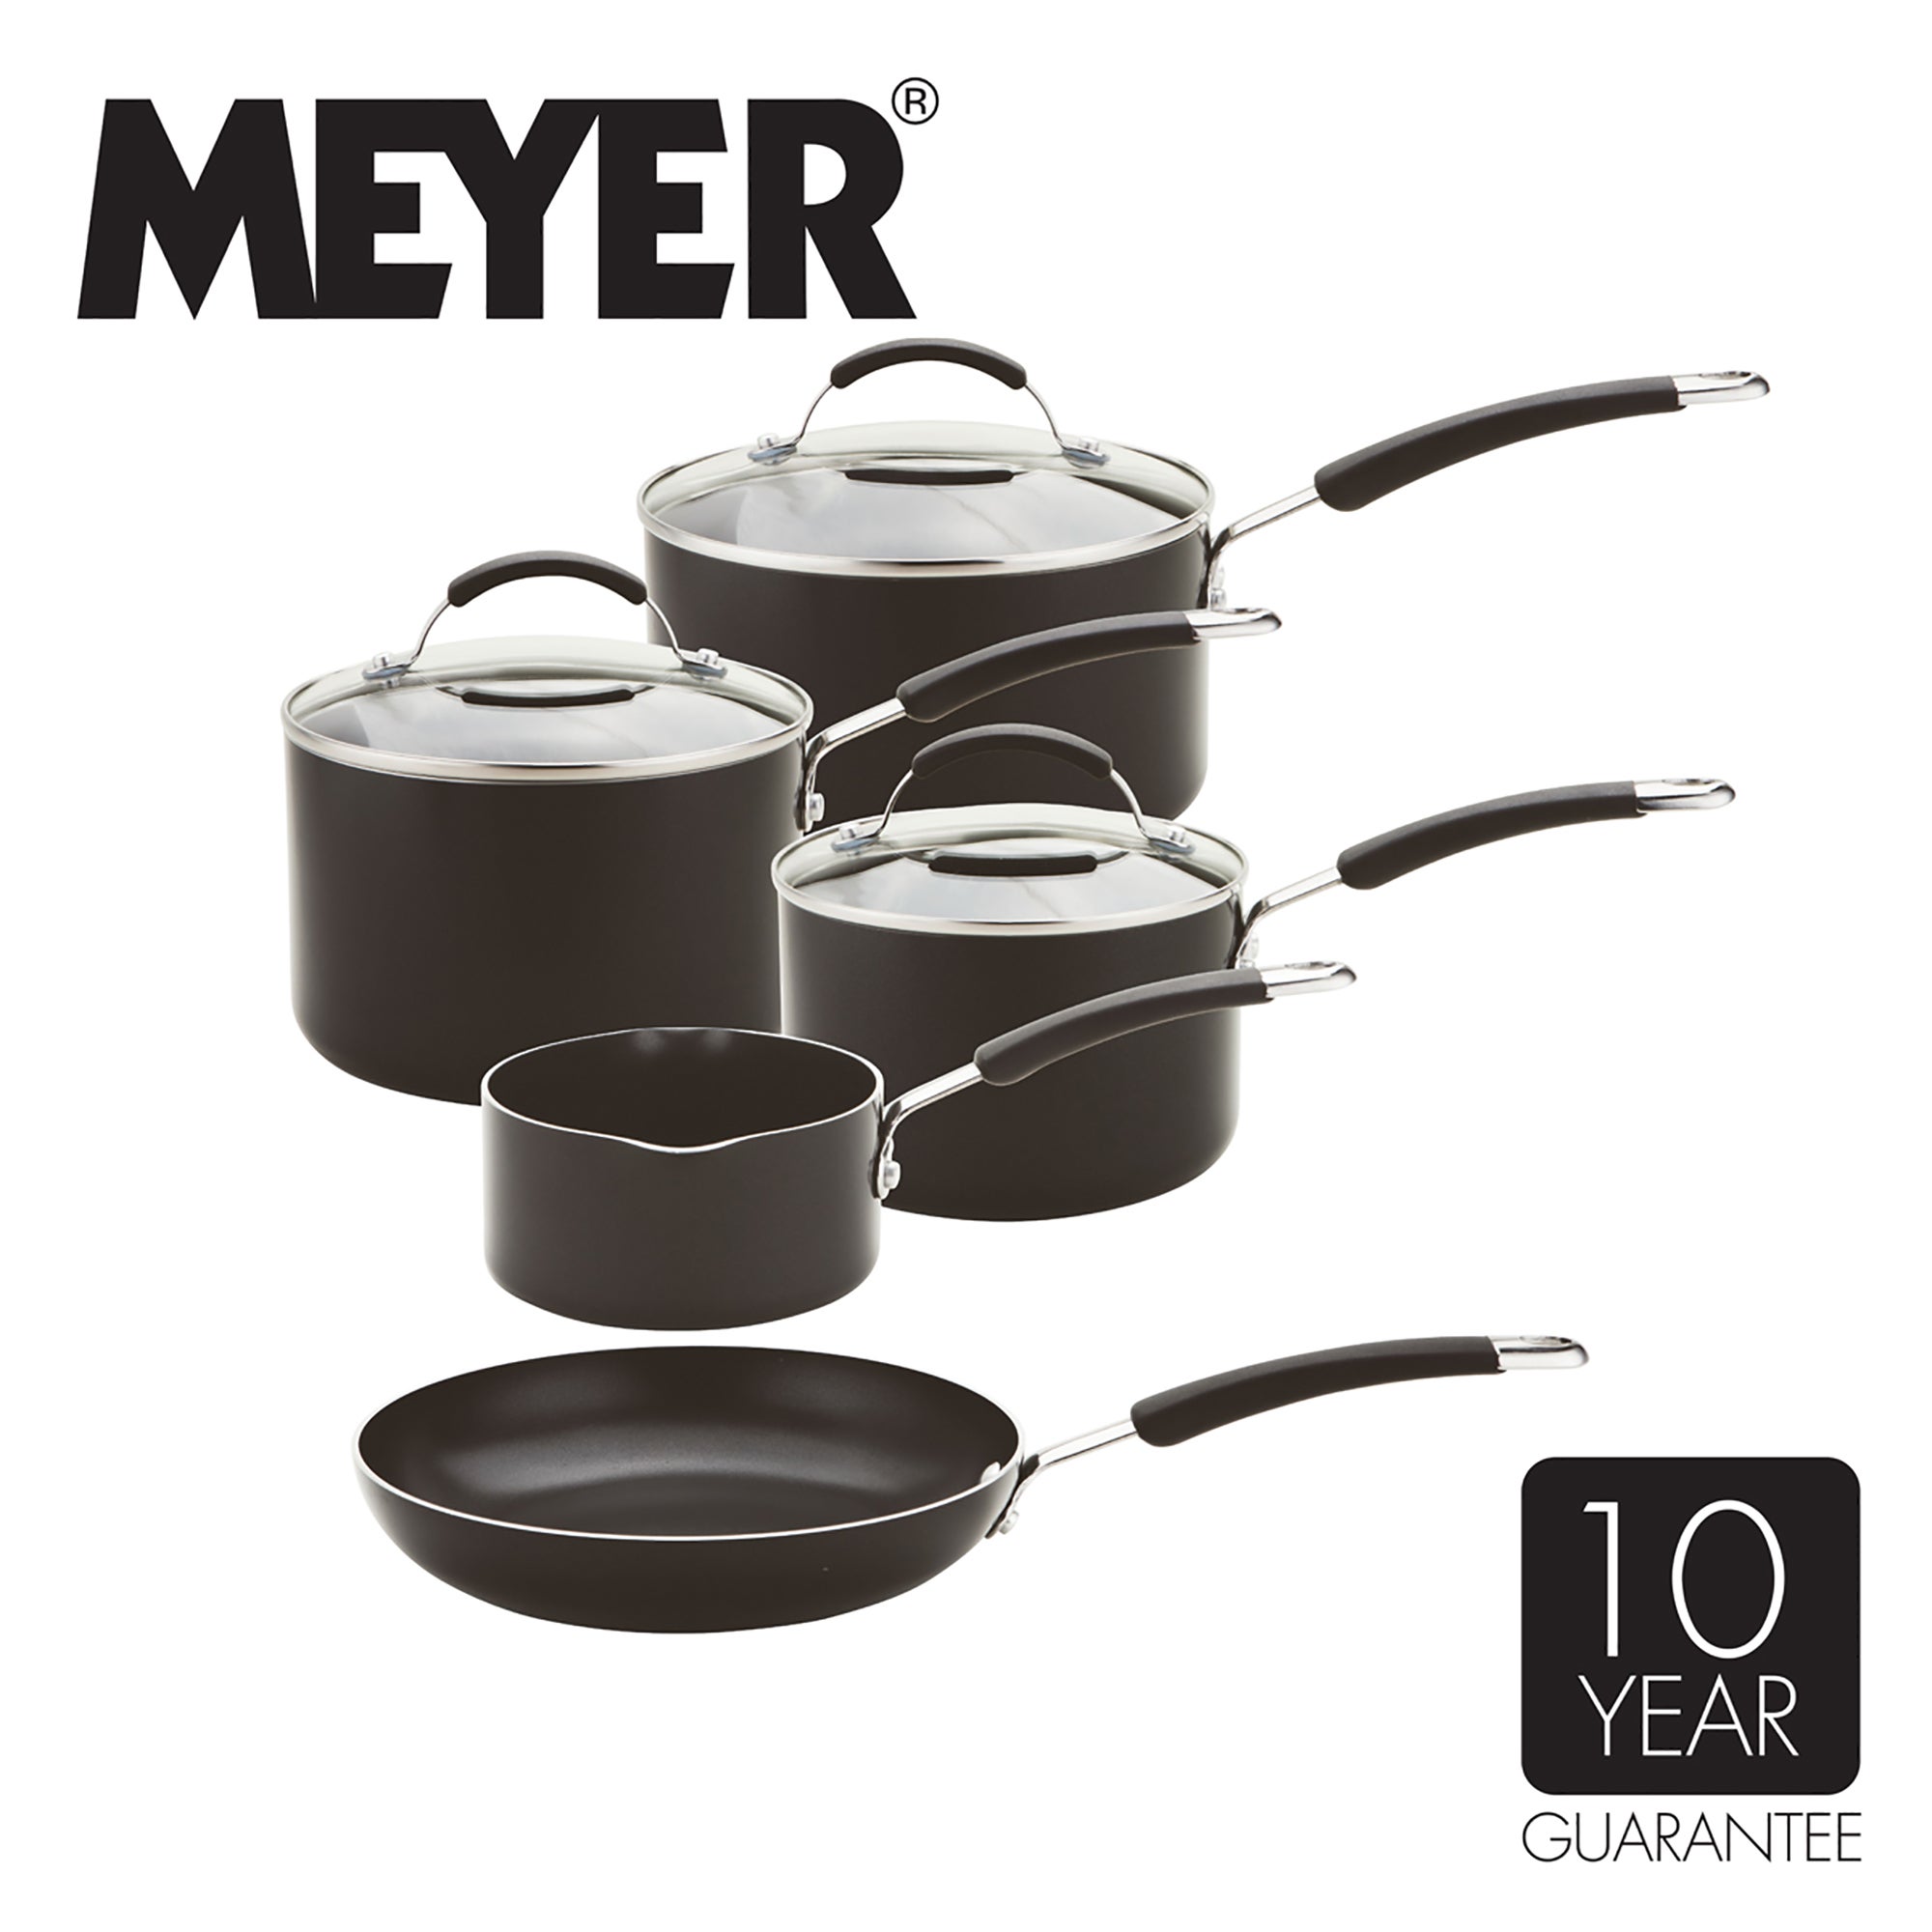 Meyer Non-Stick Induction Aluminium 5 Piece Pan Set